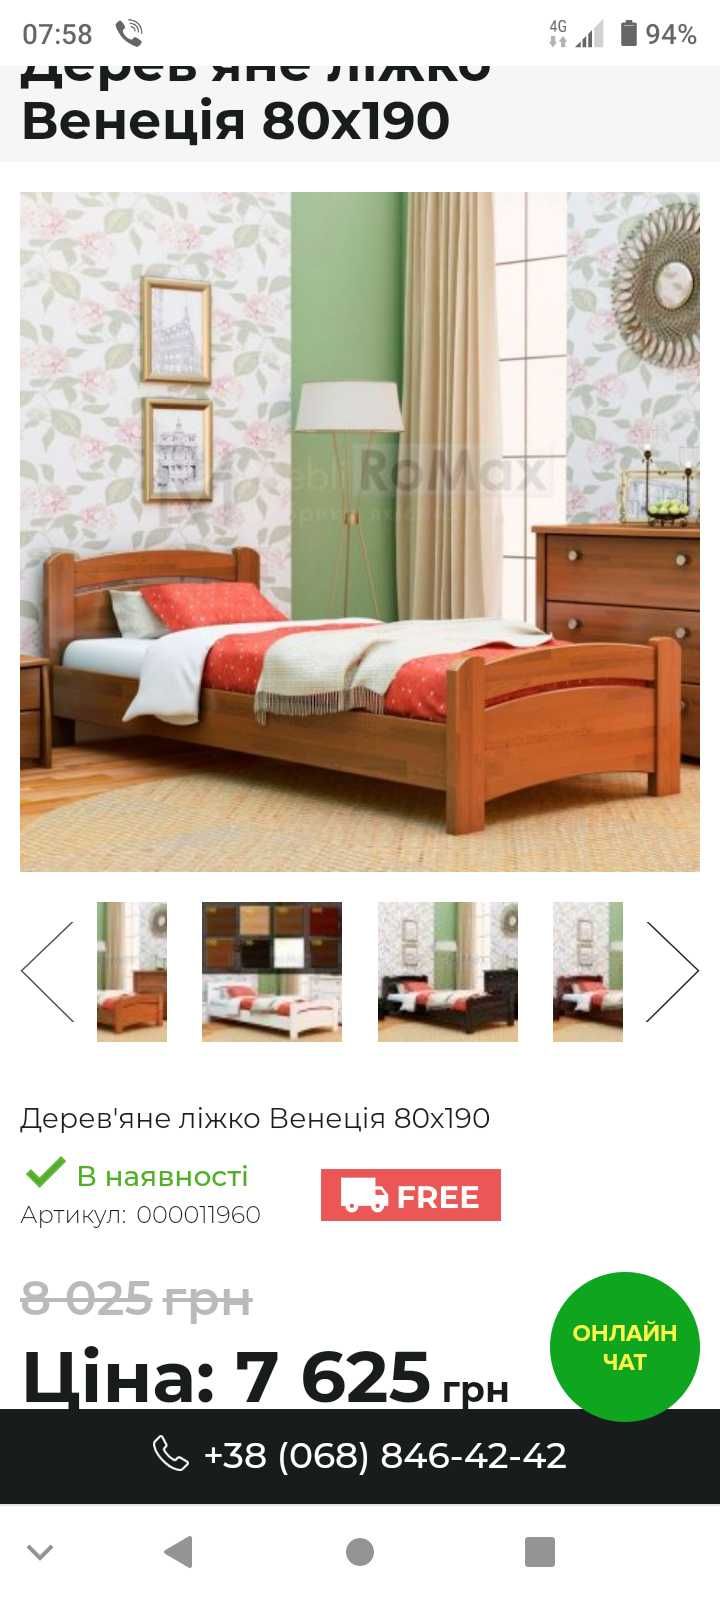 Дерев'яне односпальне ліжко з матрацом